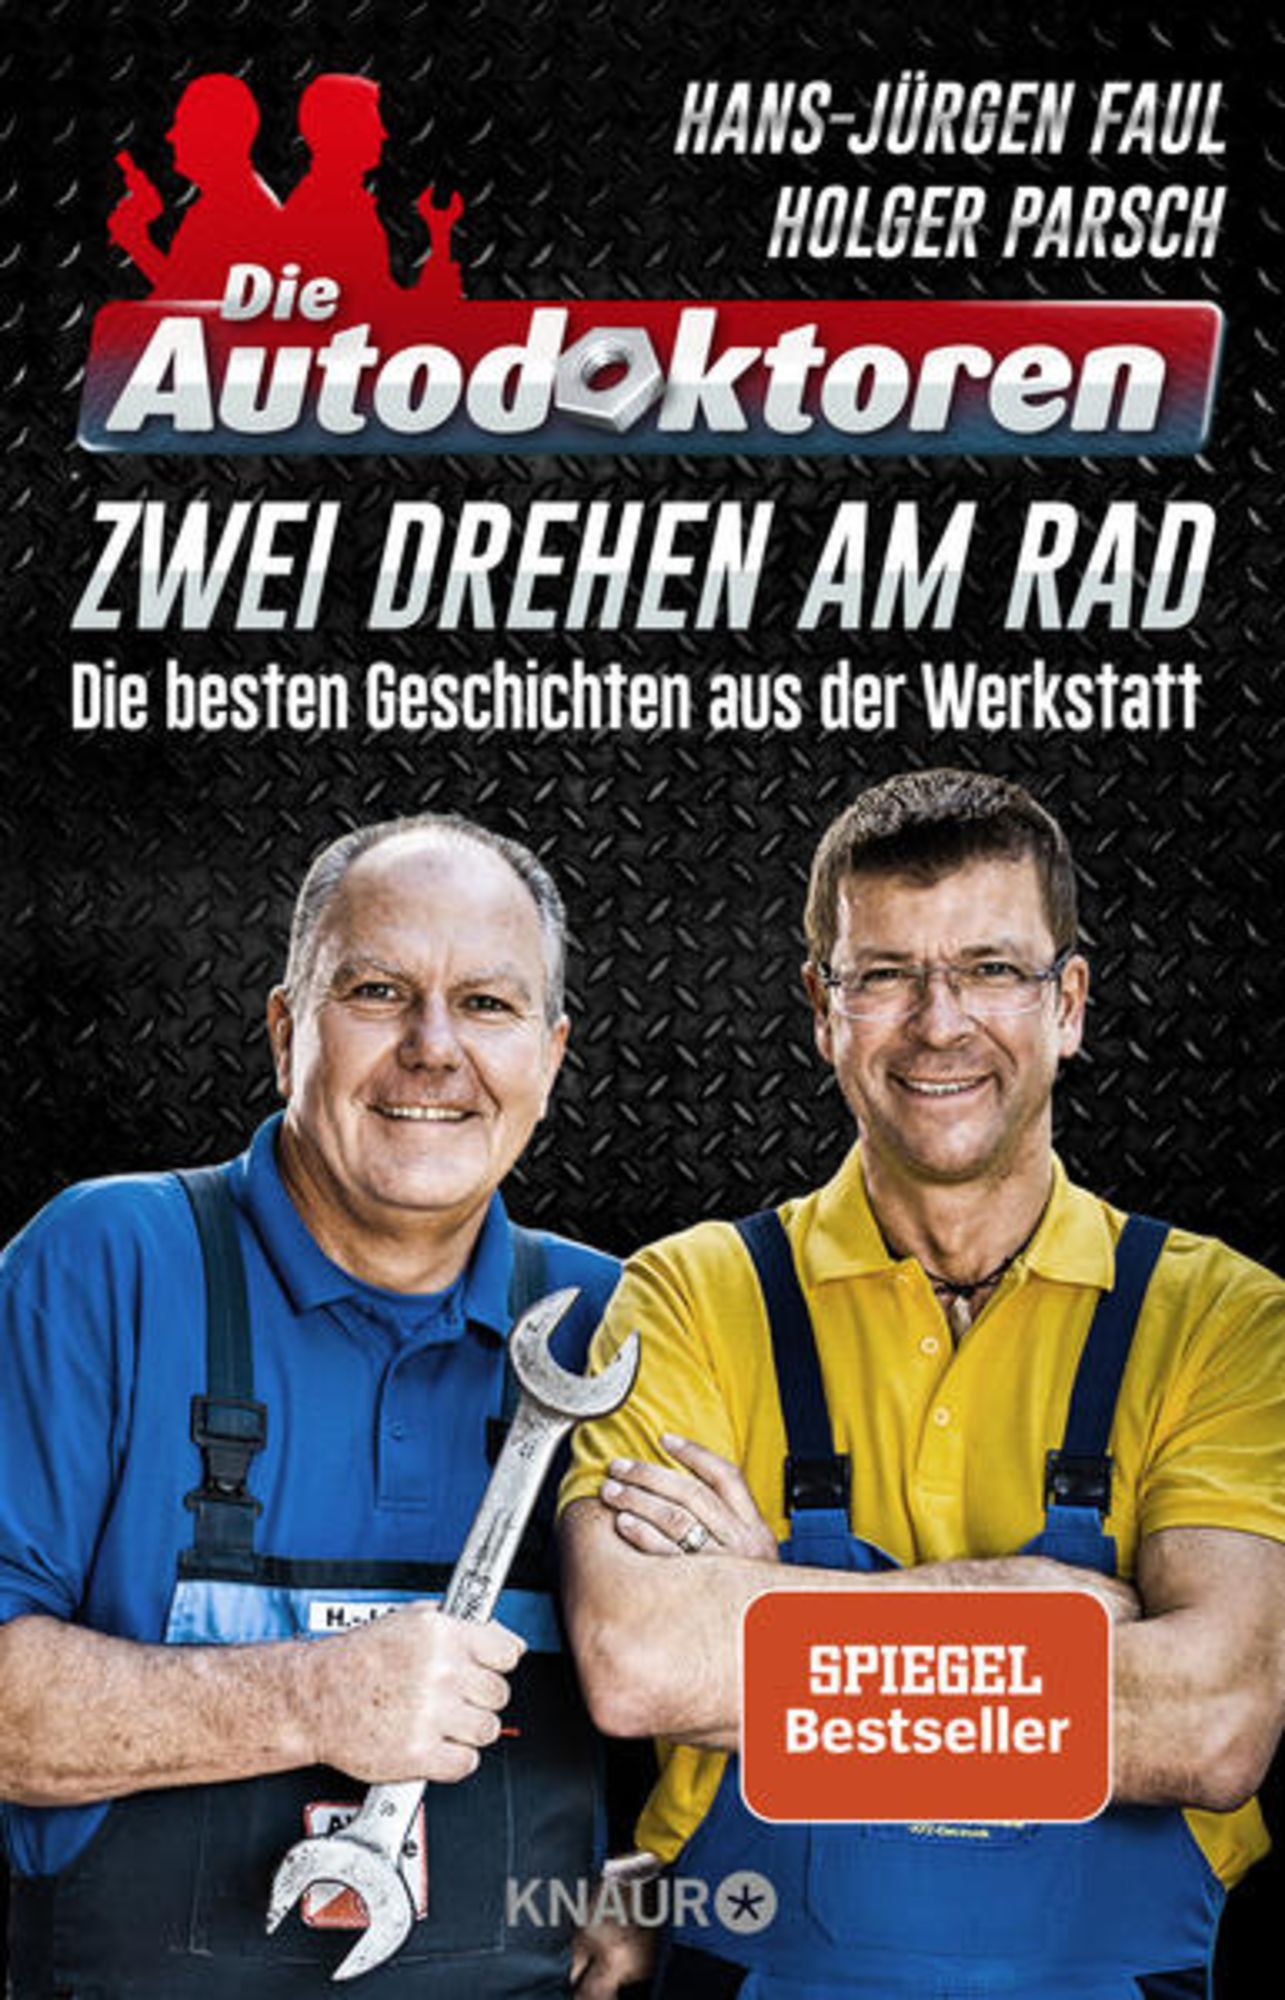 Die Autodoktoren - Zwei drehen am Rad' von 'Hans-Jürgen Faul